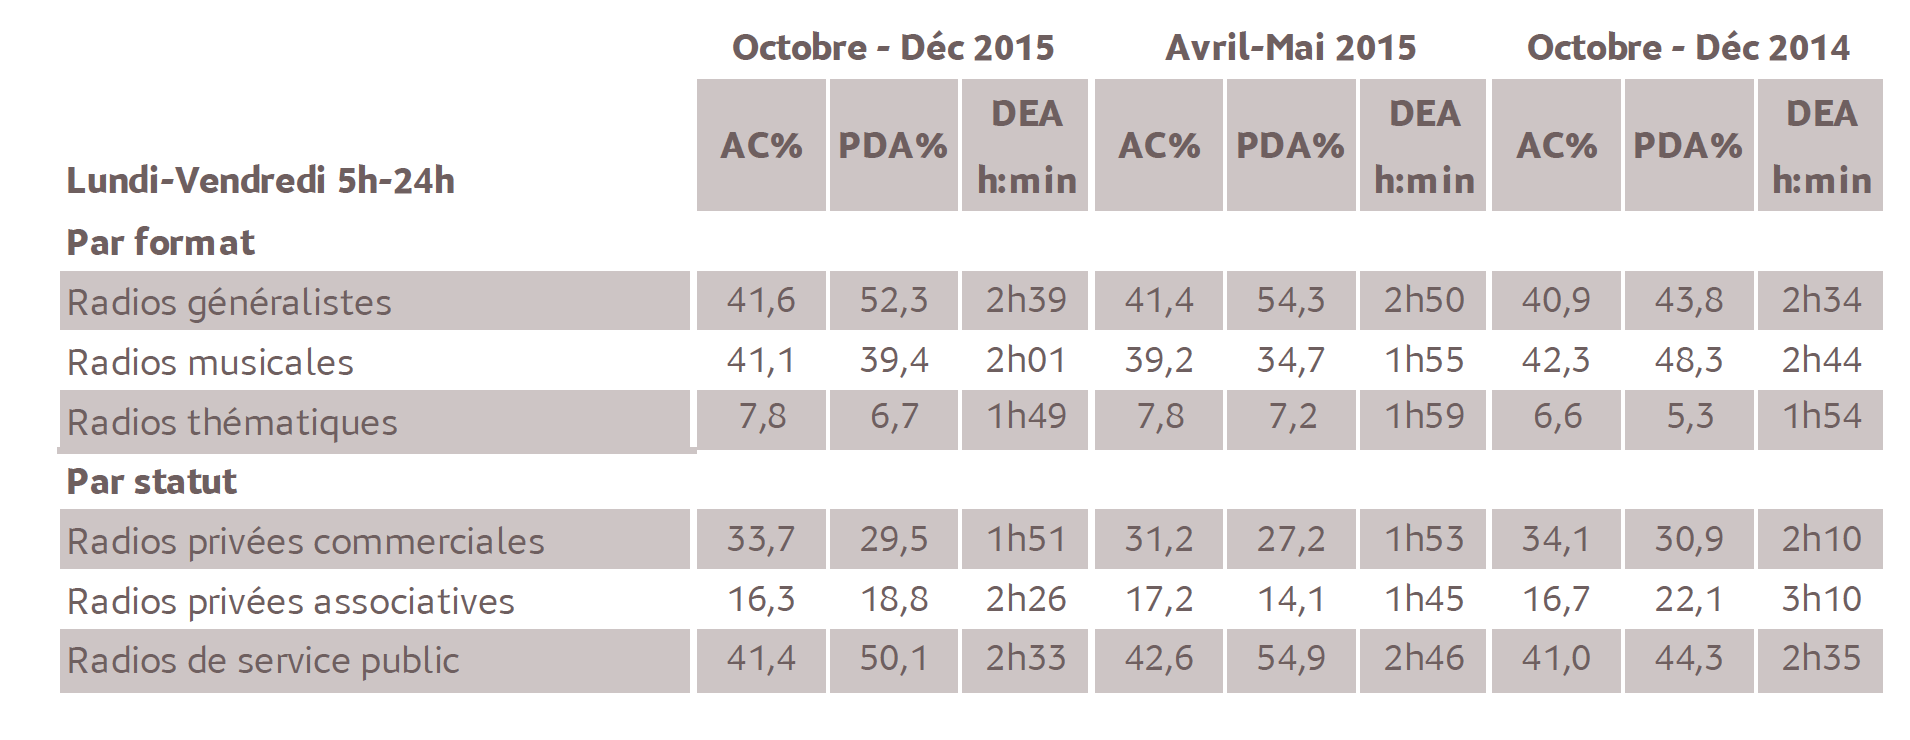 Source : Médiamétrie - Métridom Guyane – Vague Octobre-Décembre 2015 - 13 ans et plus - Copyright Médiamétrie - Tous droits réservés